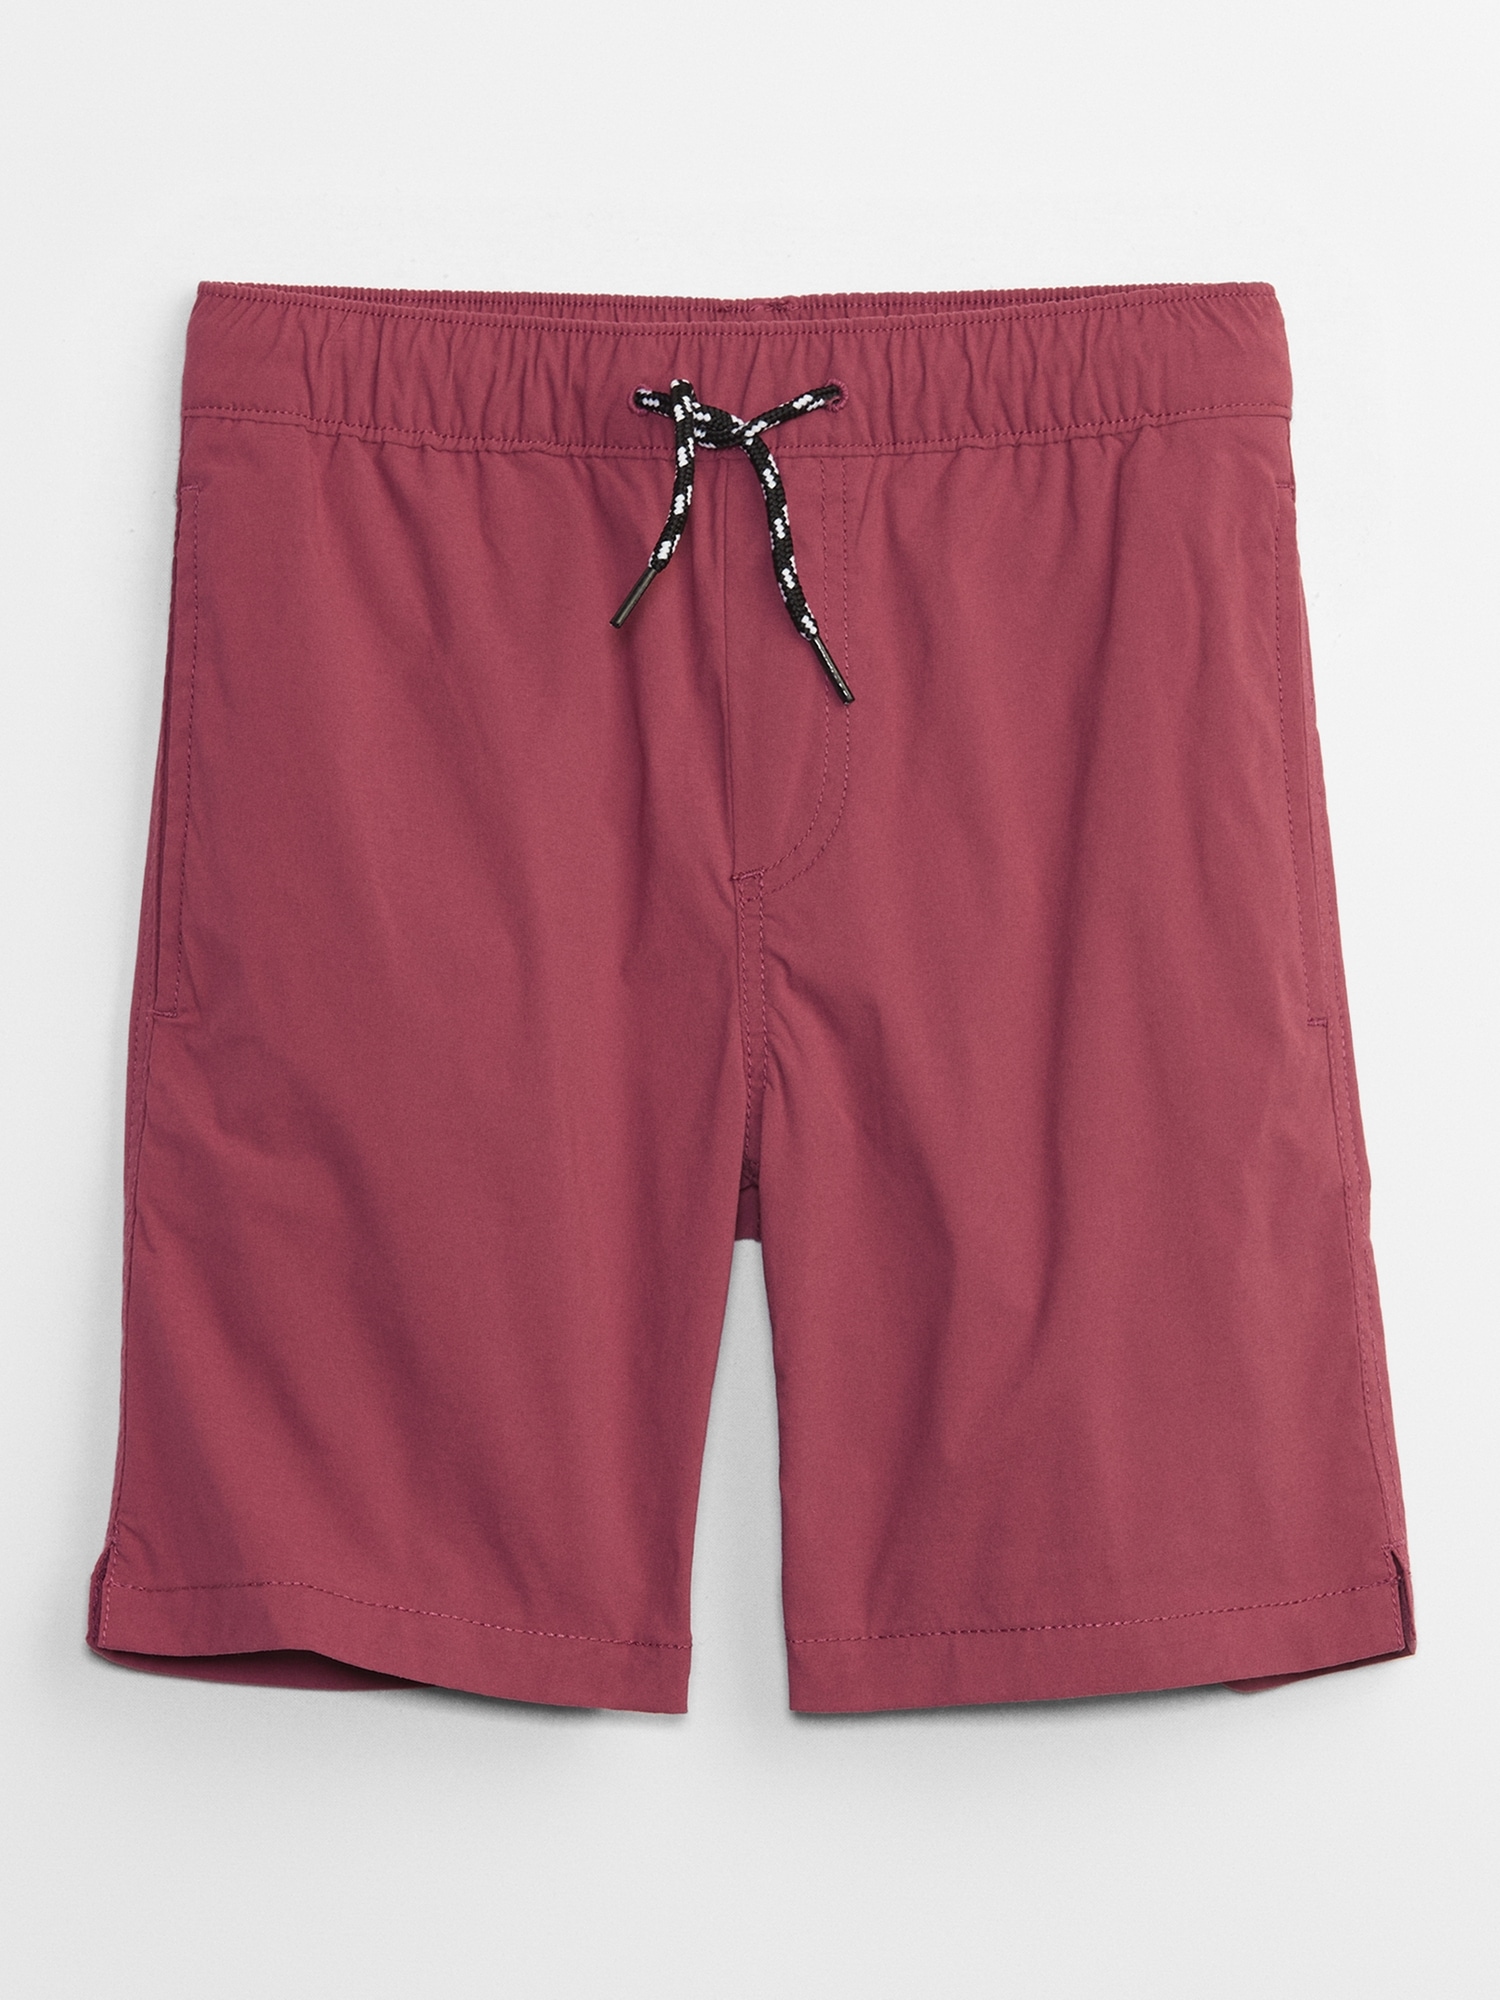 Kids Hybrid Nylon Shorts | Gap Factory